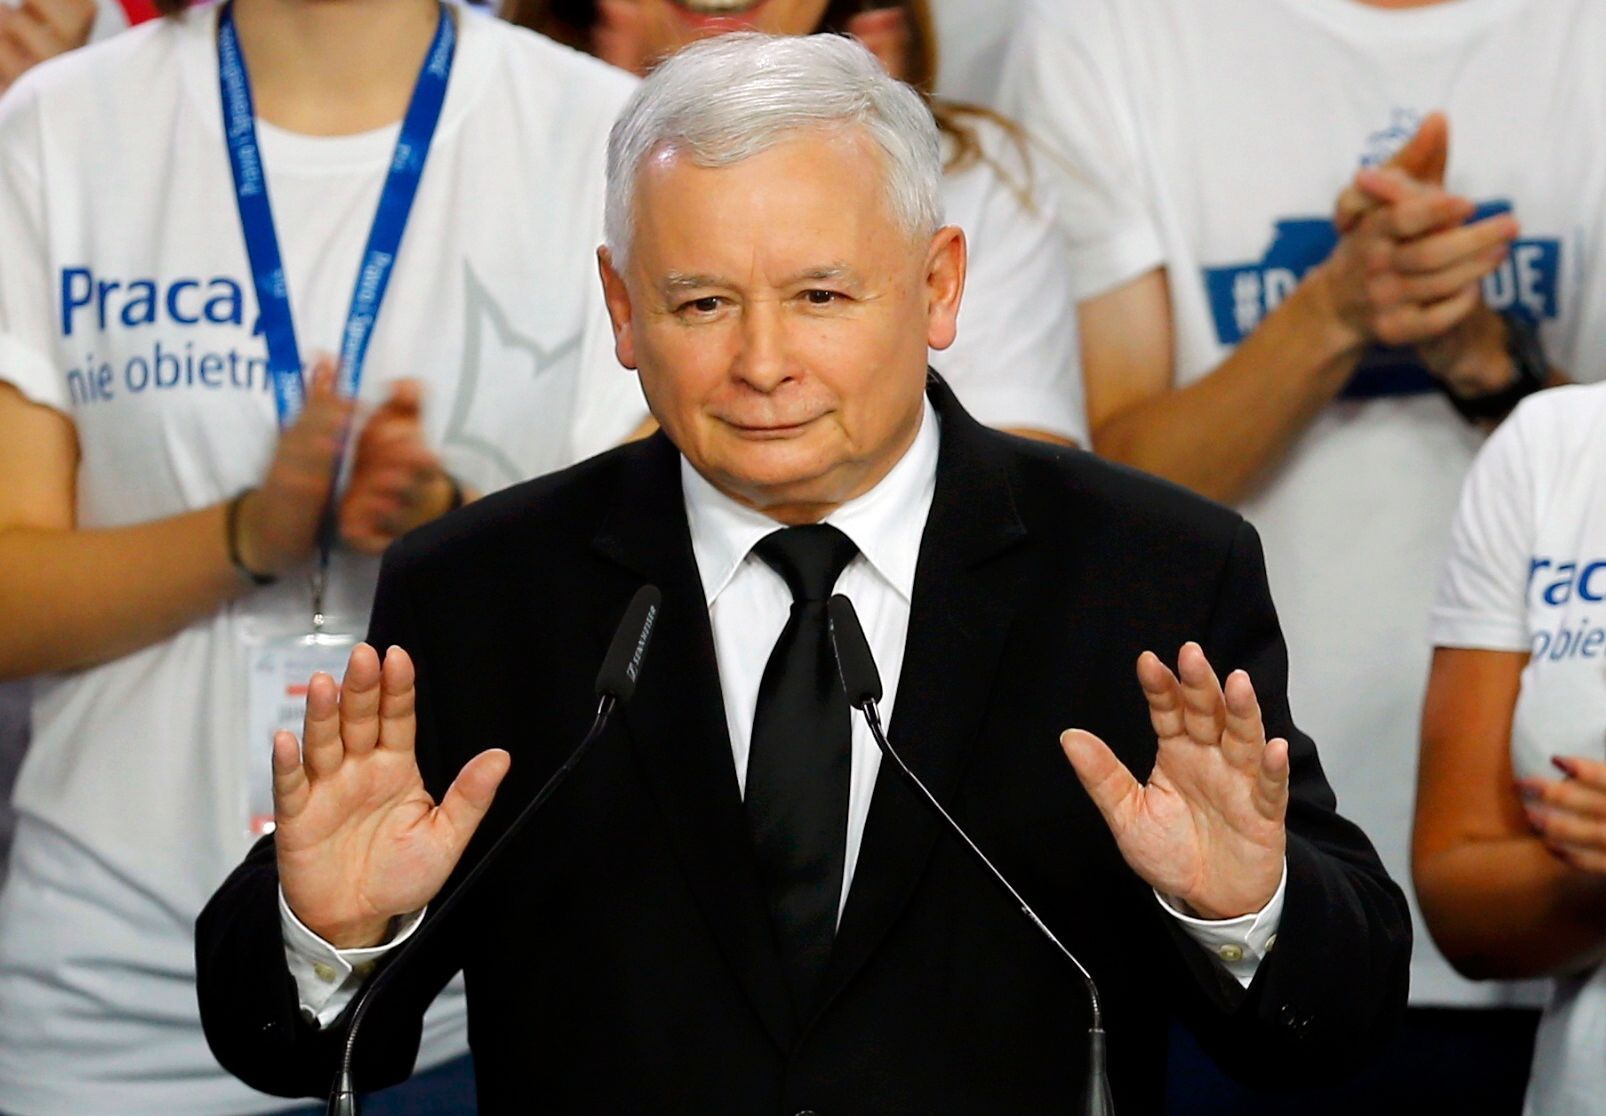 Polsko - Právo a spravedlnost - Jaroslaw Kaczyński